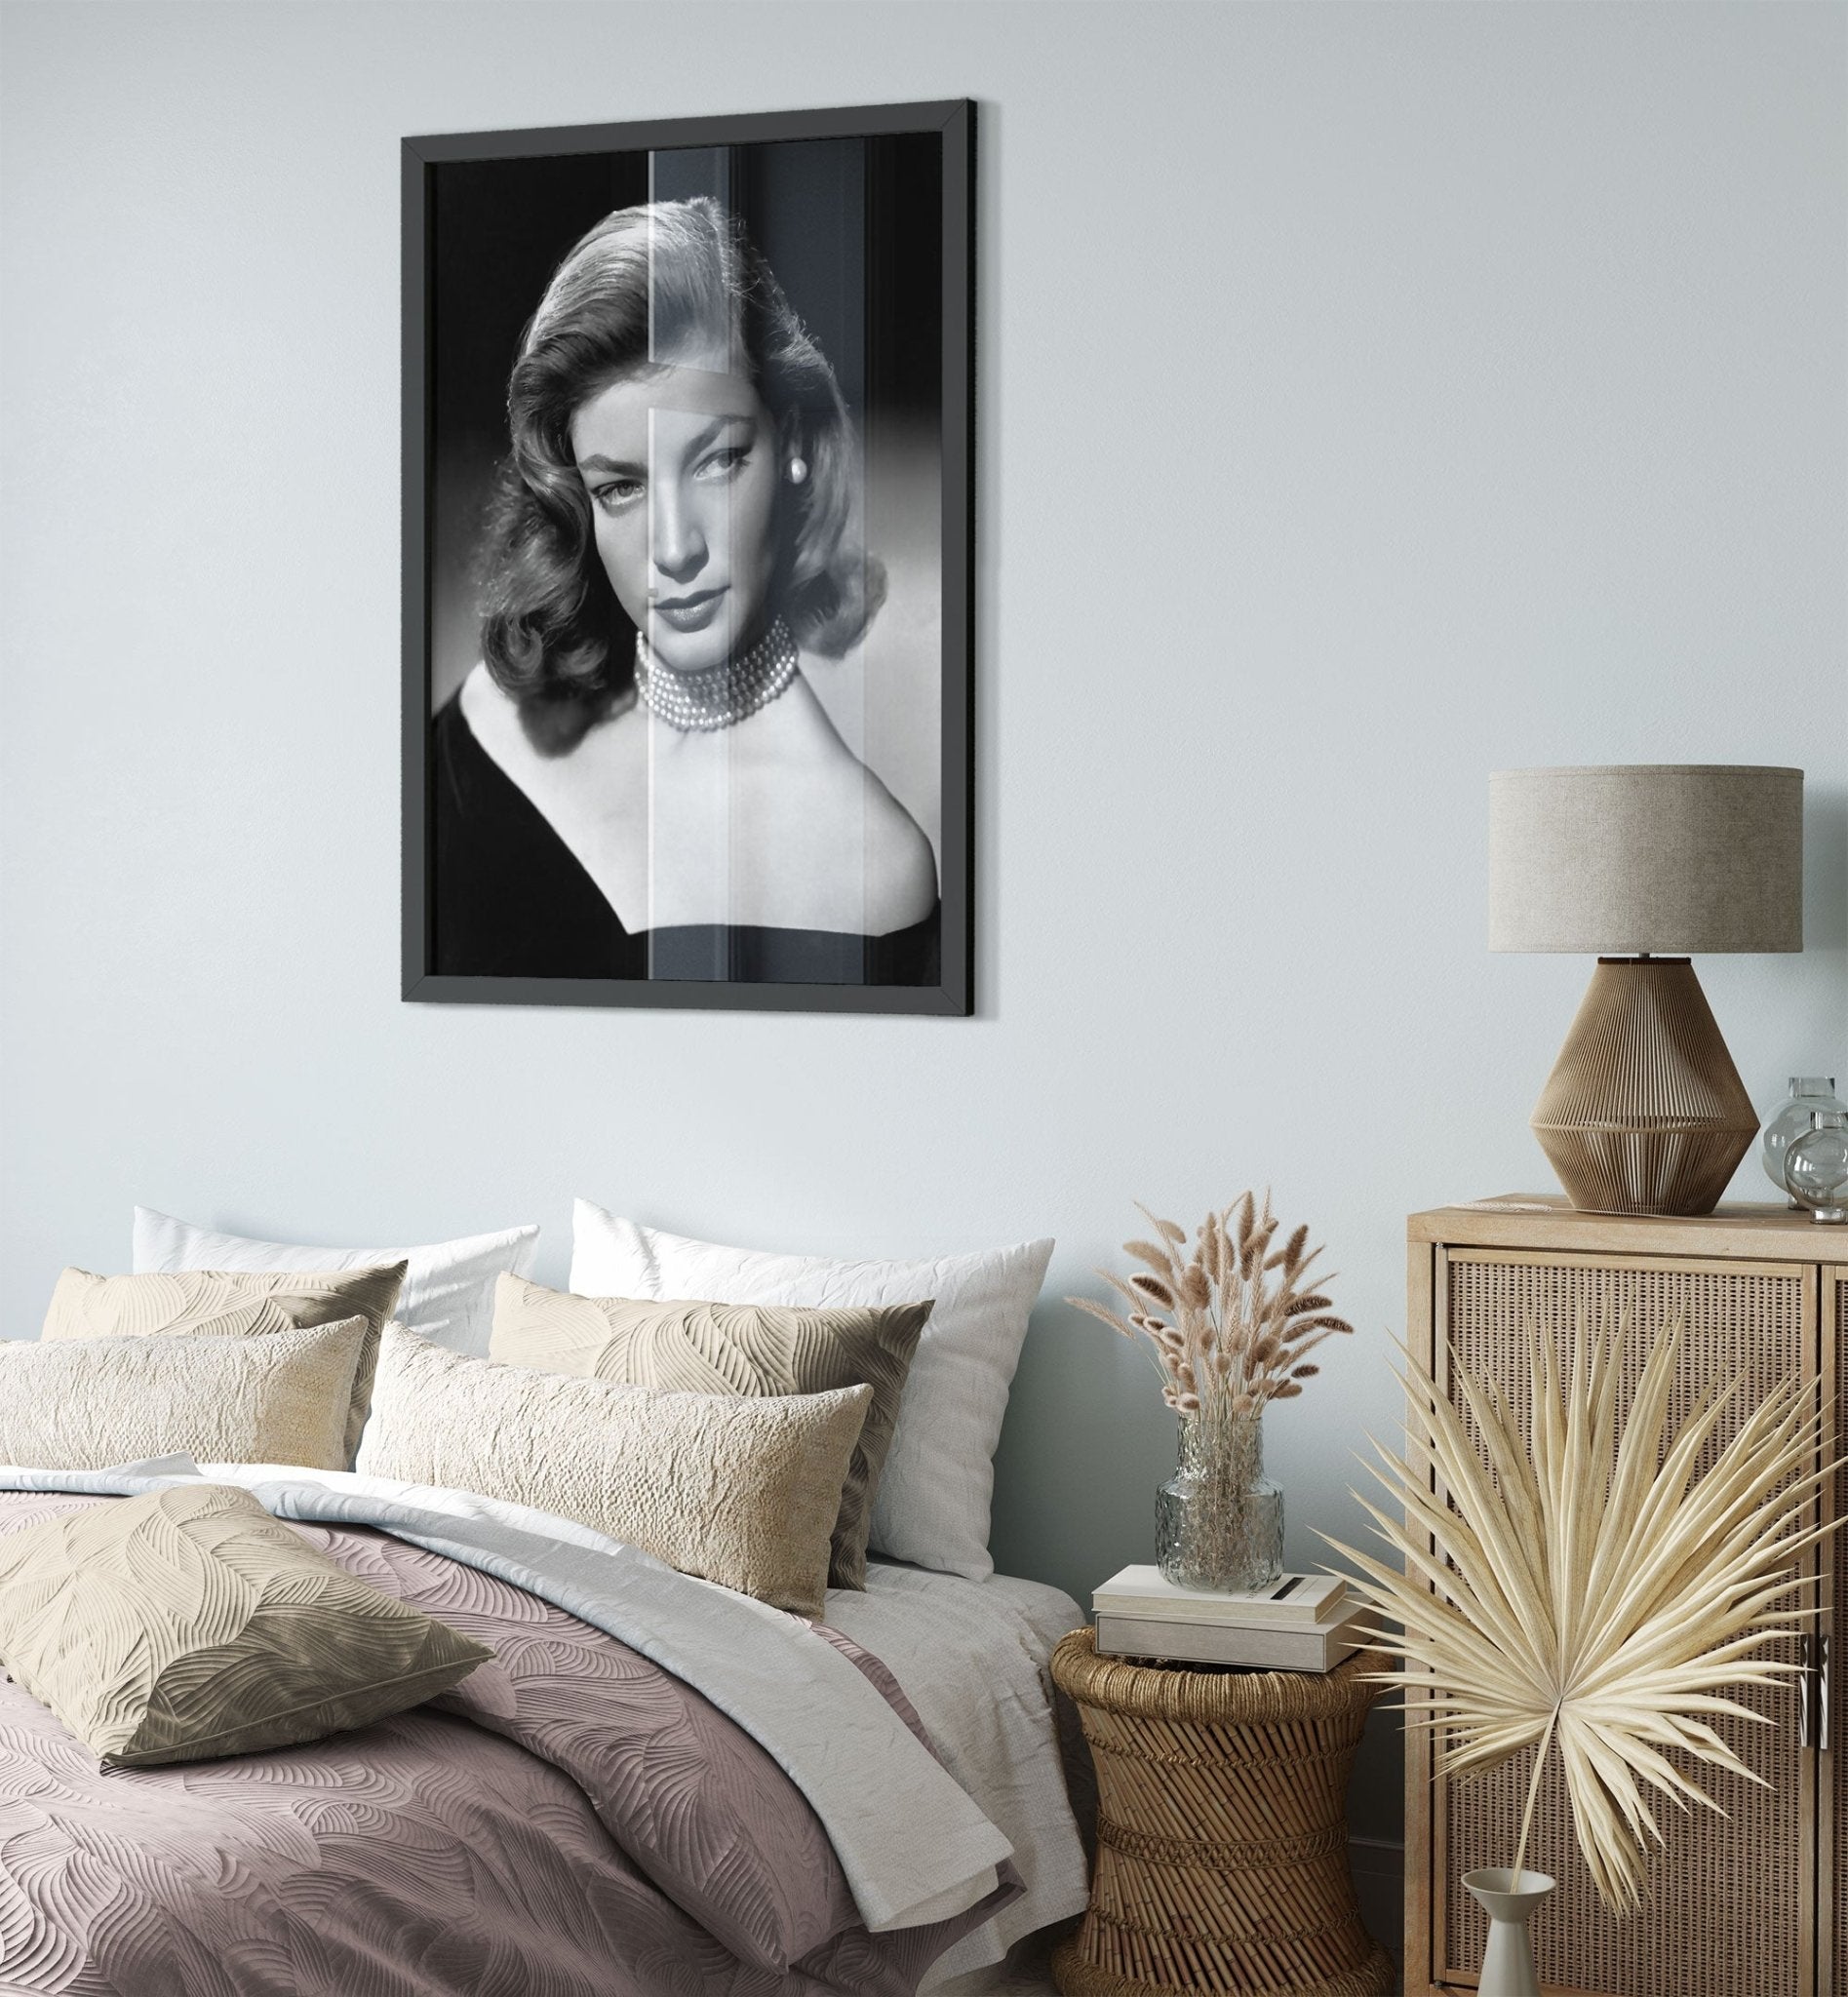 Lauren Bacall Framed, Sexiest Star #6, Vintage Photo - Iconic Lauren Bacall Framed Print - Hollywood Silver Screen Star - WallArtPrints4U